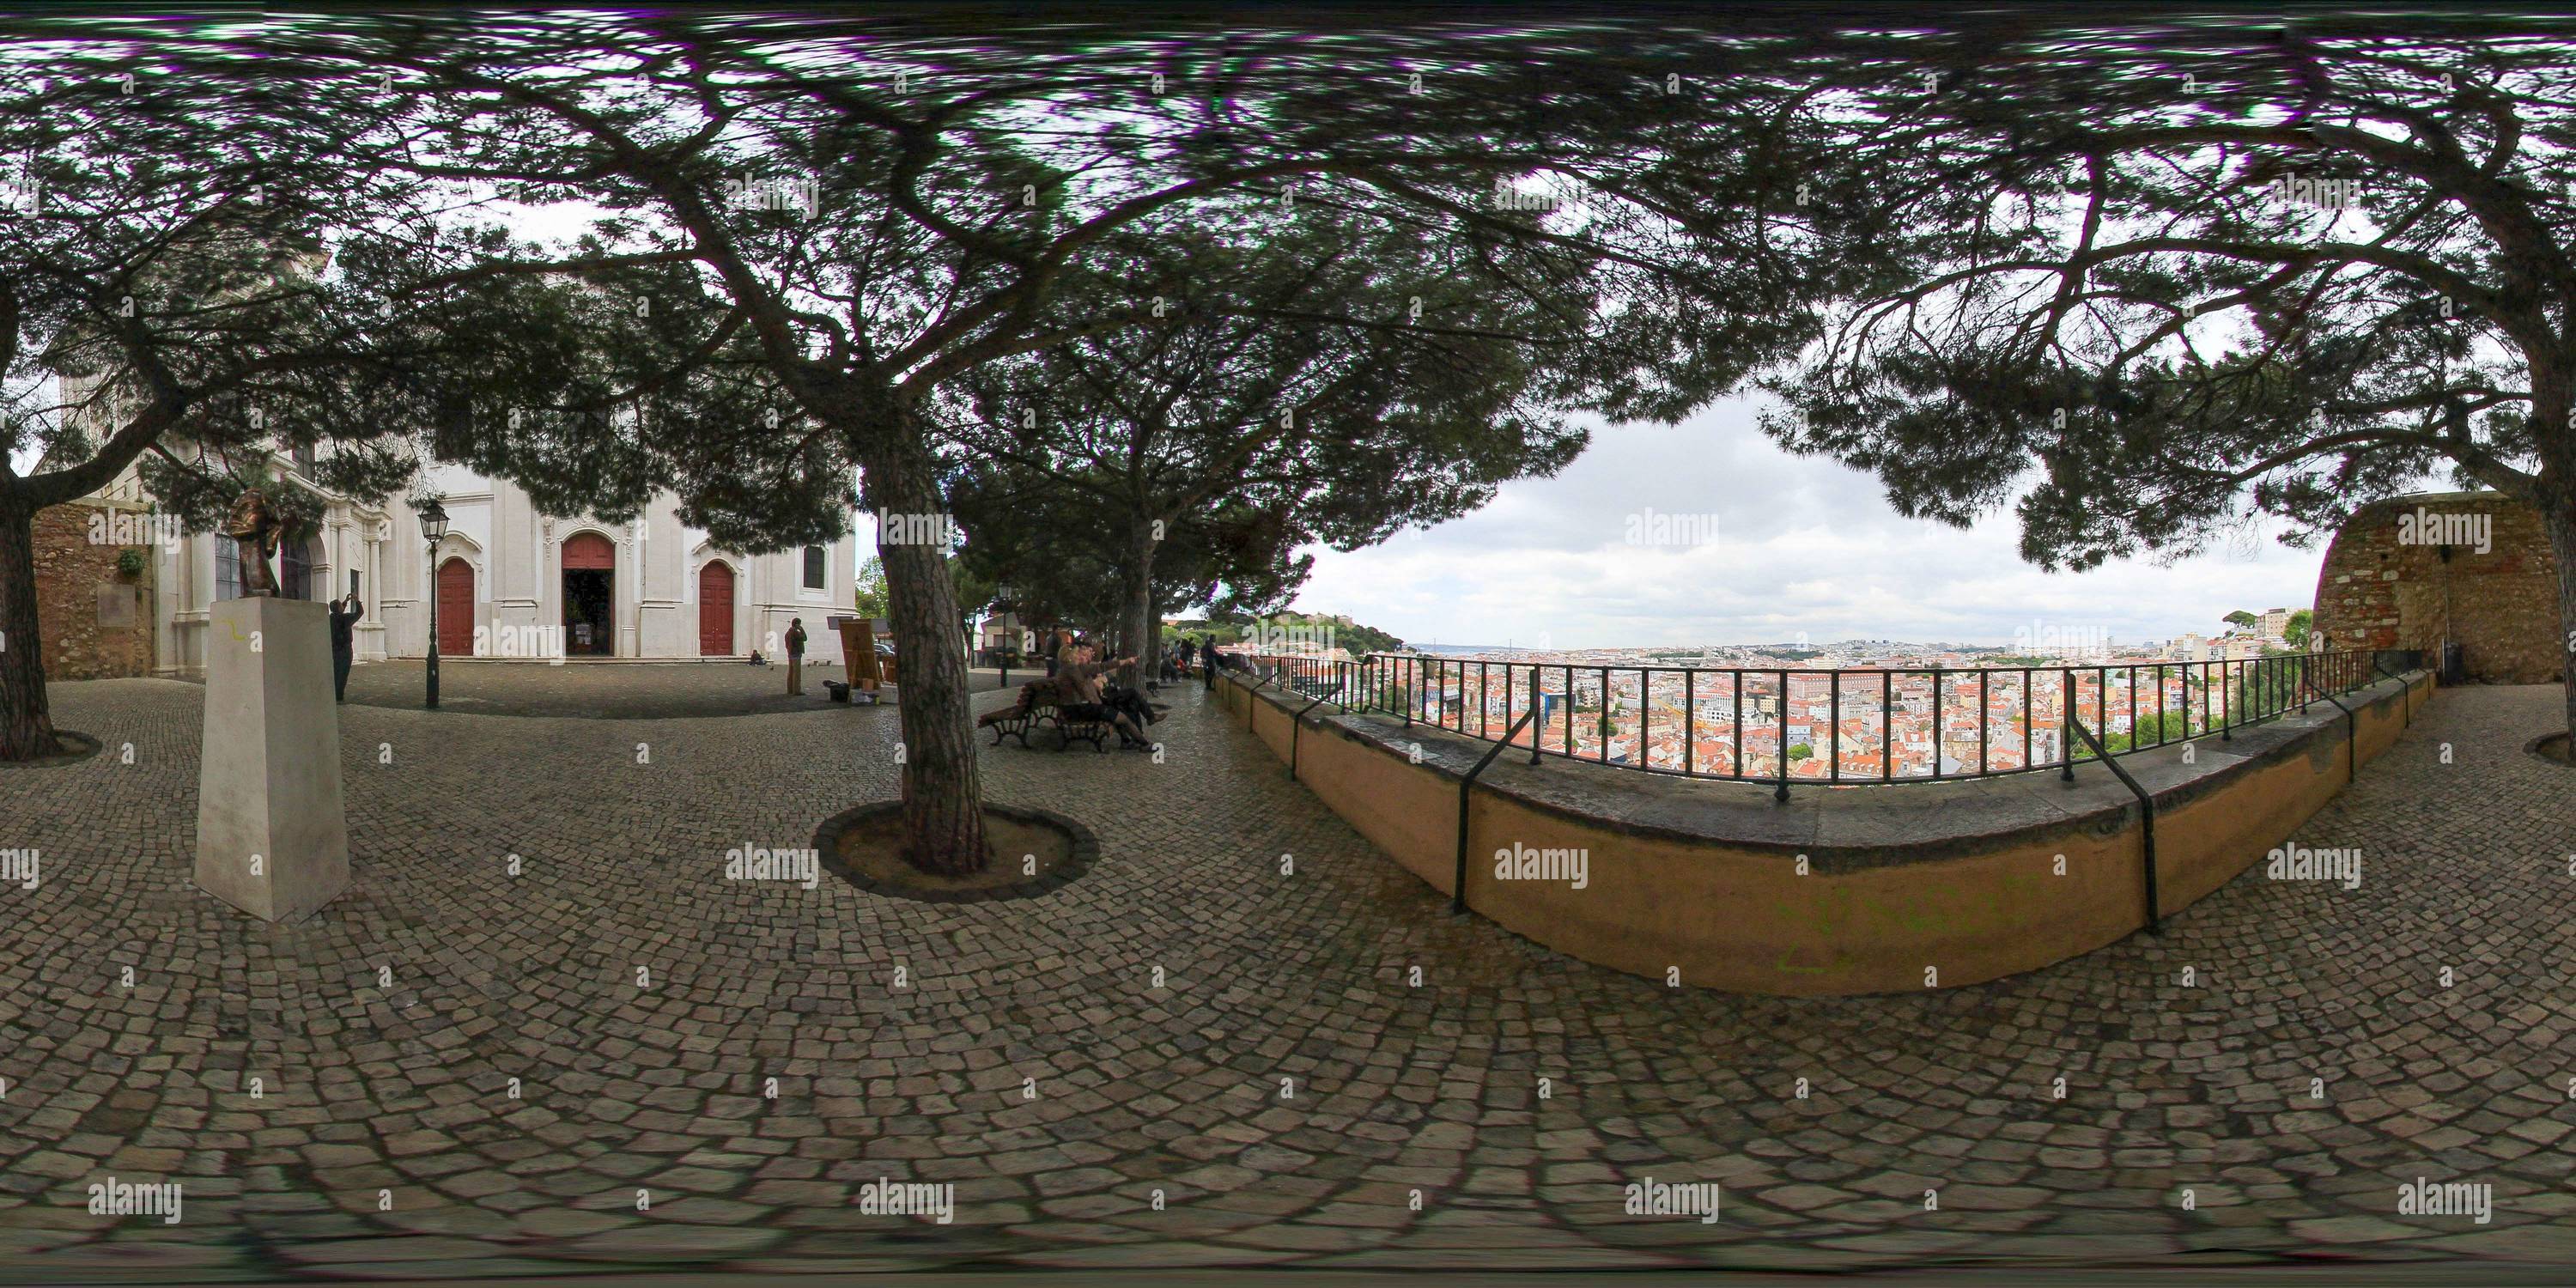 Vue panoramique à 360° de Point de vue Graça/ point de vue Sophia de Mello Breyner Andresen